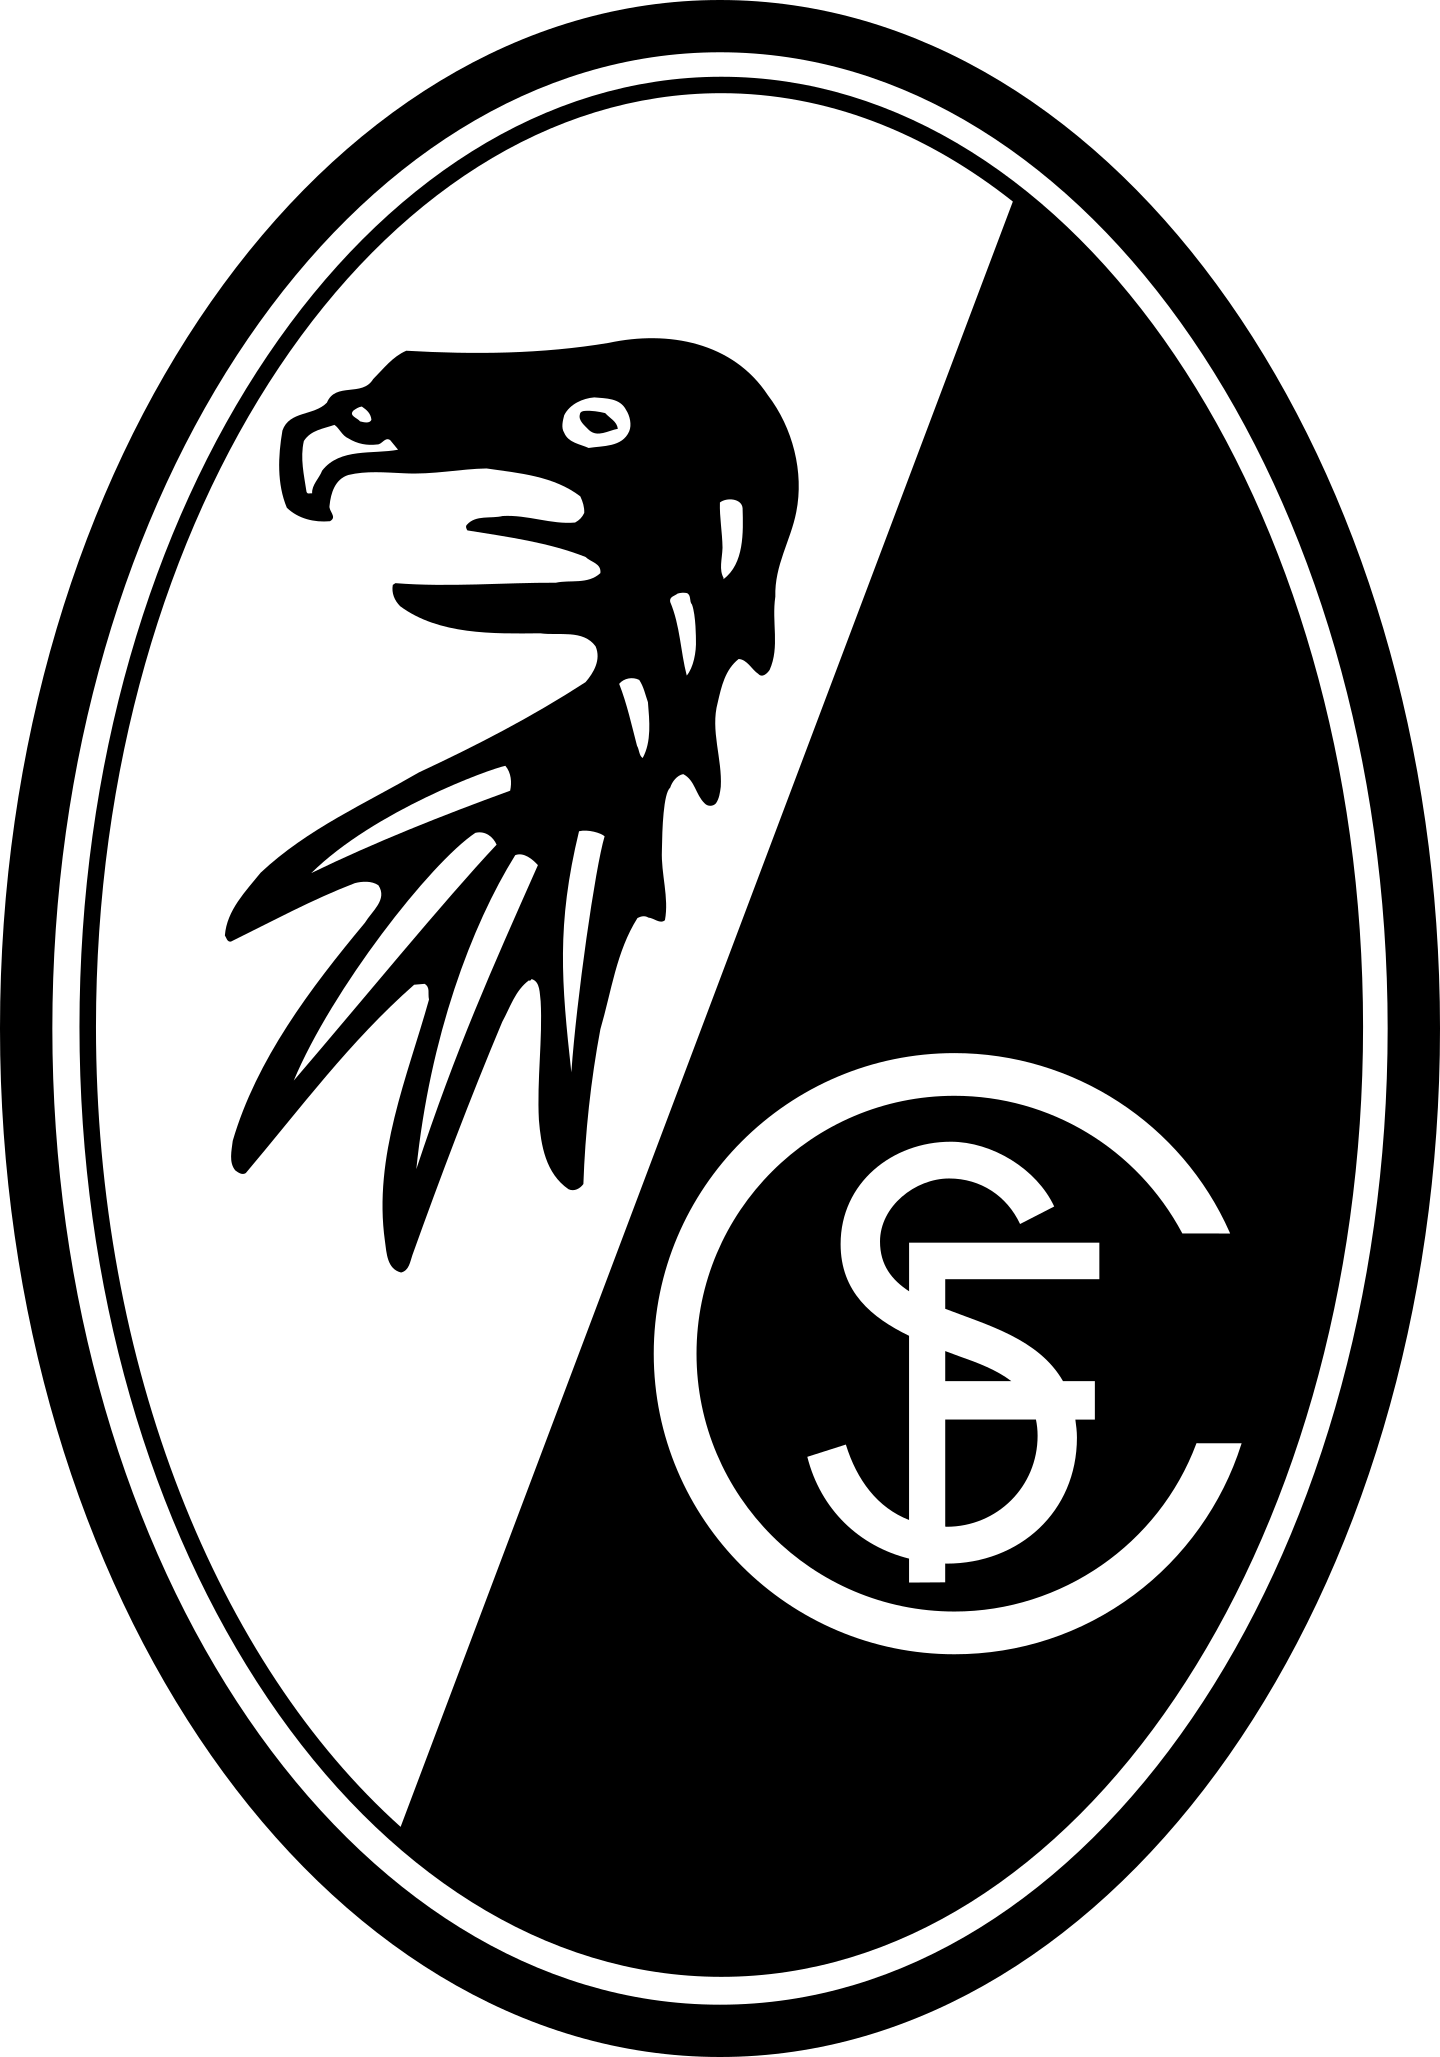 sc freiburg logo 2 - SC Freiburg Logo